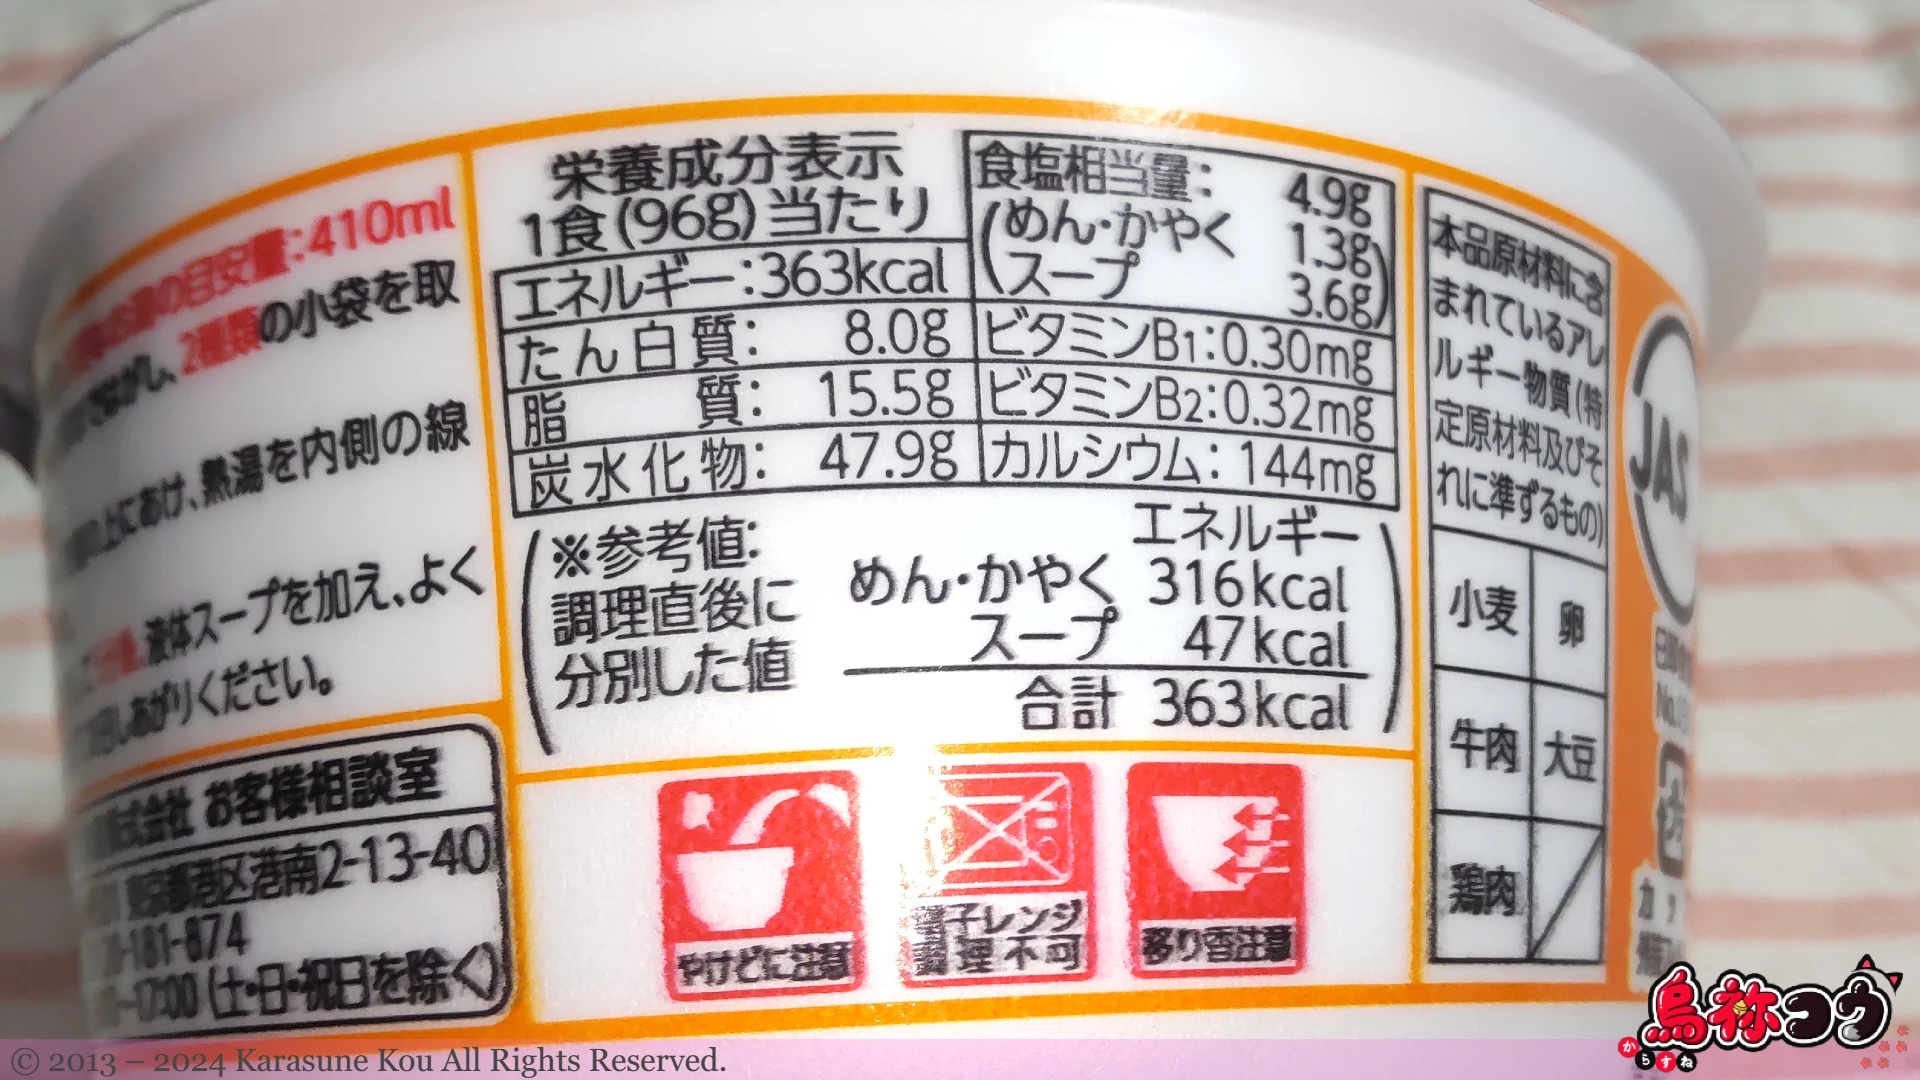 東洋水産のマルちゃん芋煮うどんの栄養成分表示です